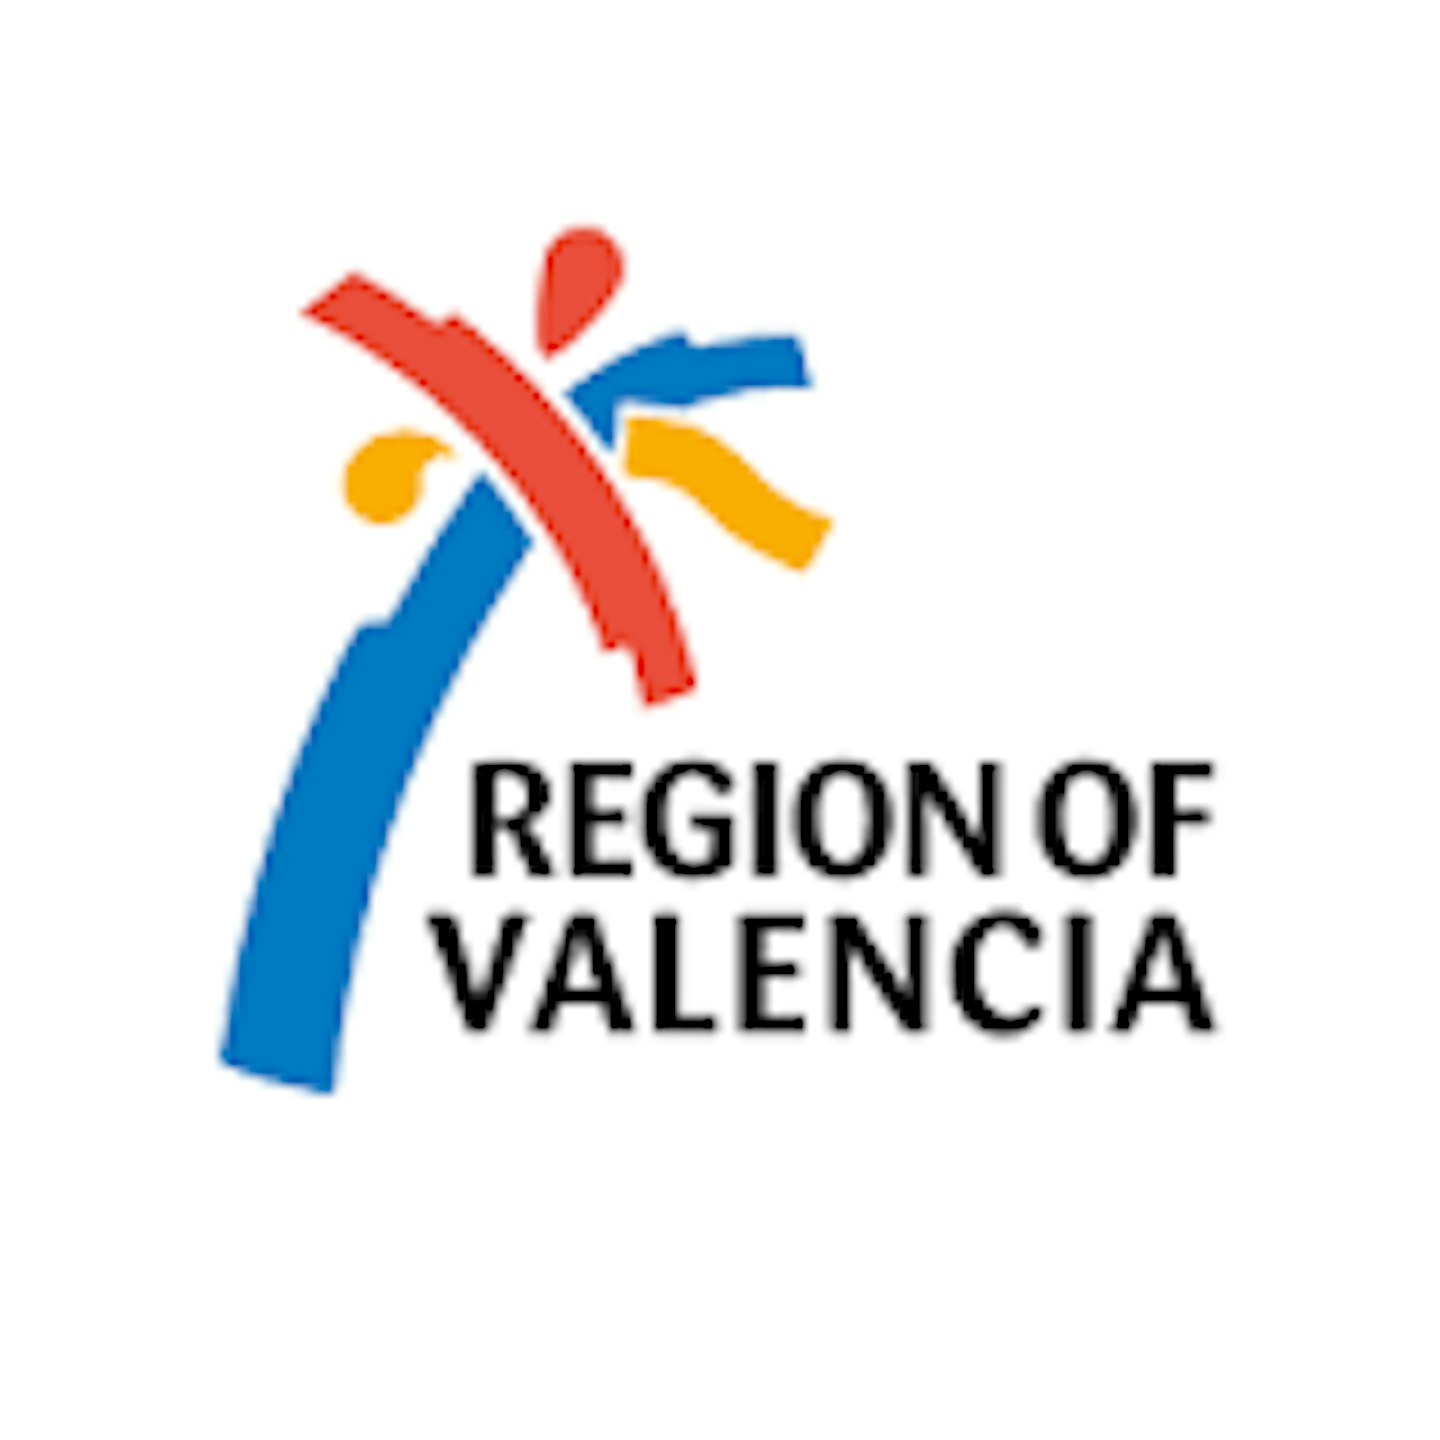 Region of Valencia logo